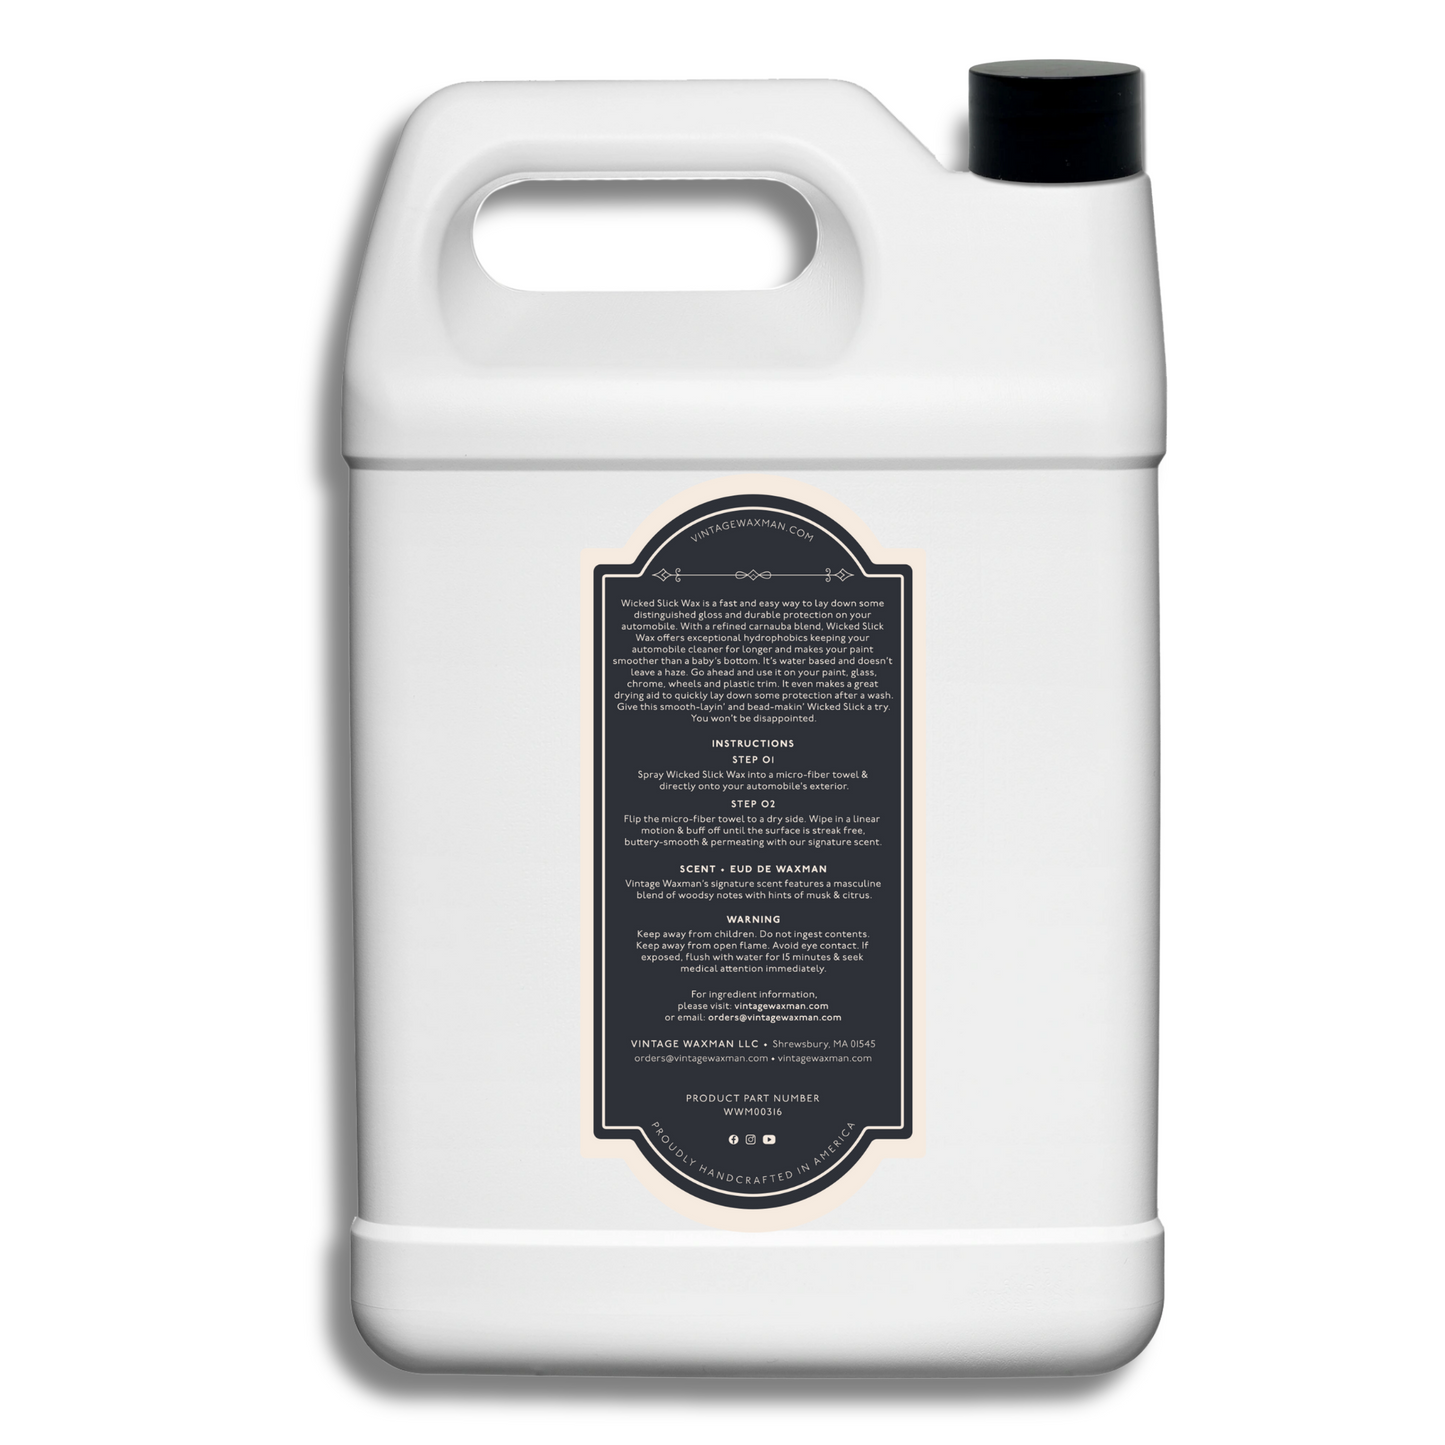 Wicked Slick Wax {Hydrophobic Carnauba Spray Protection}